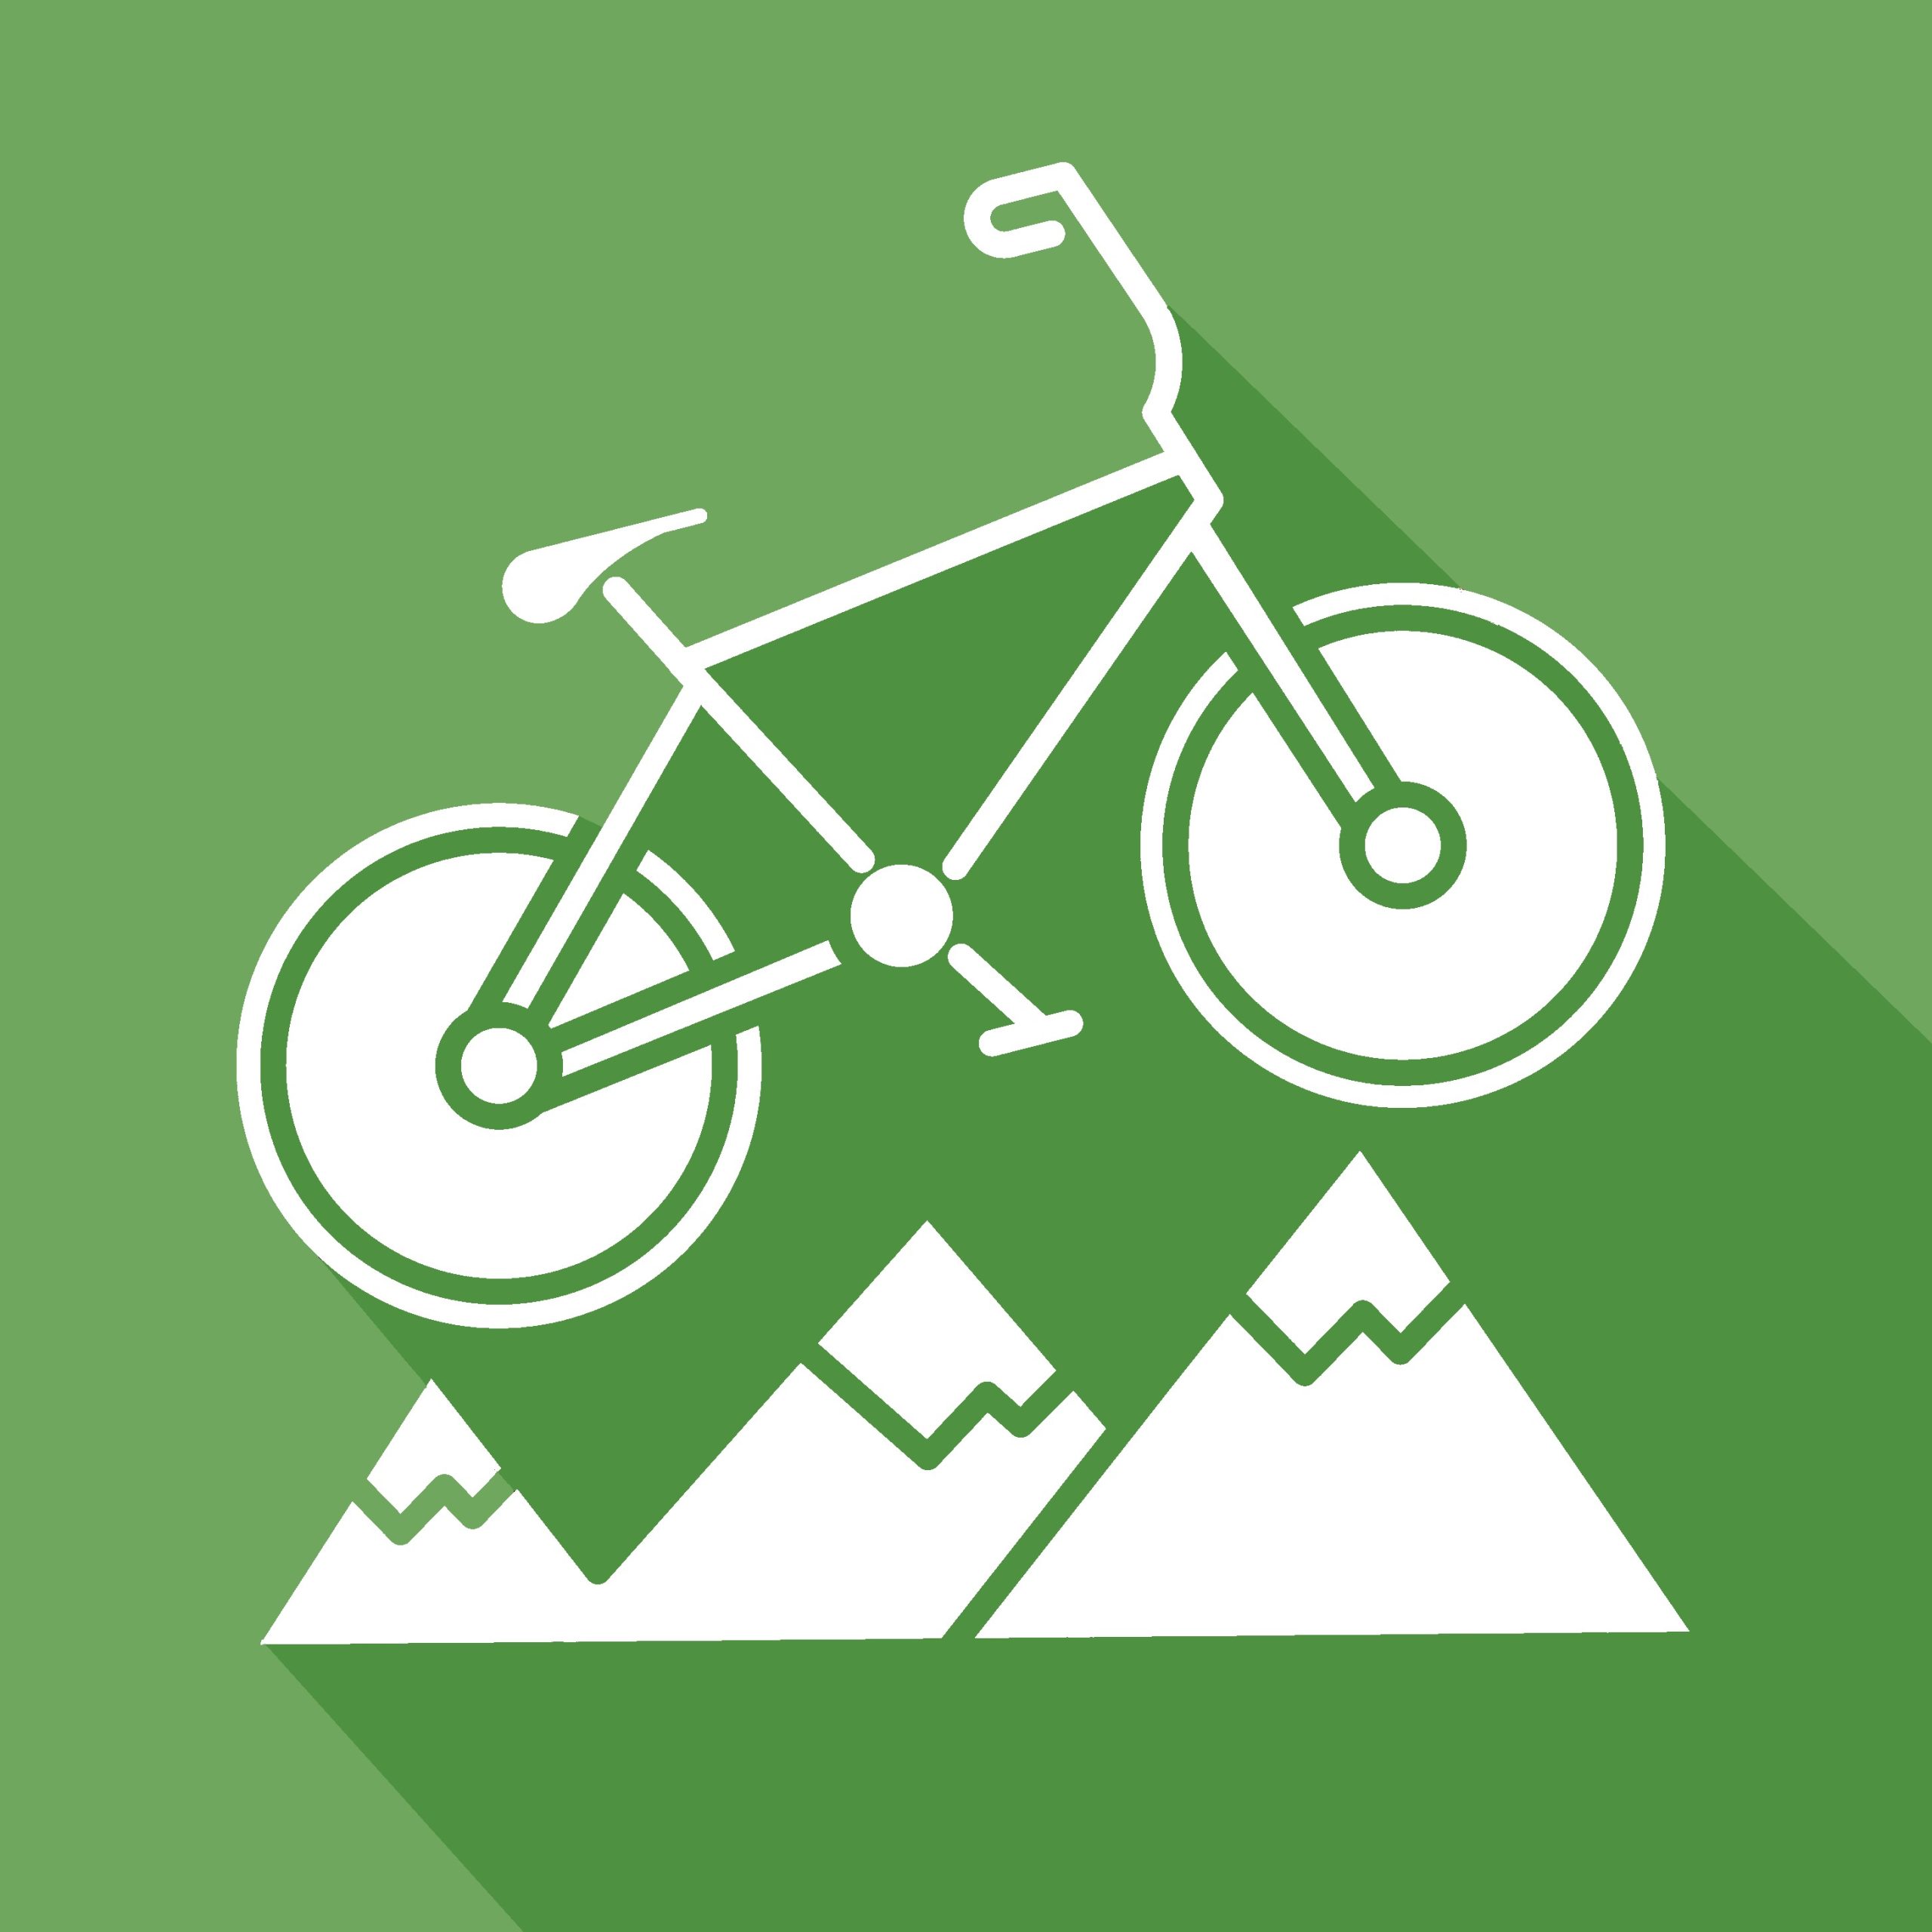 Cycling Facilities and bike rides